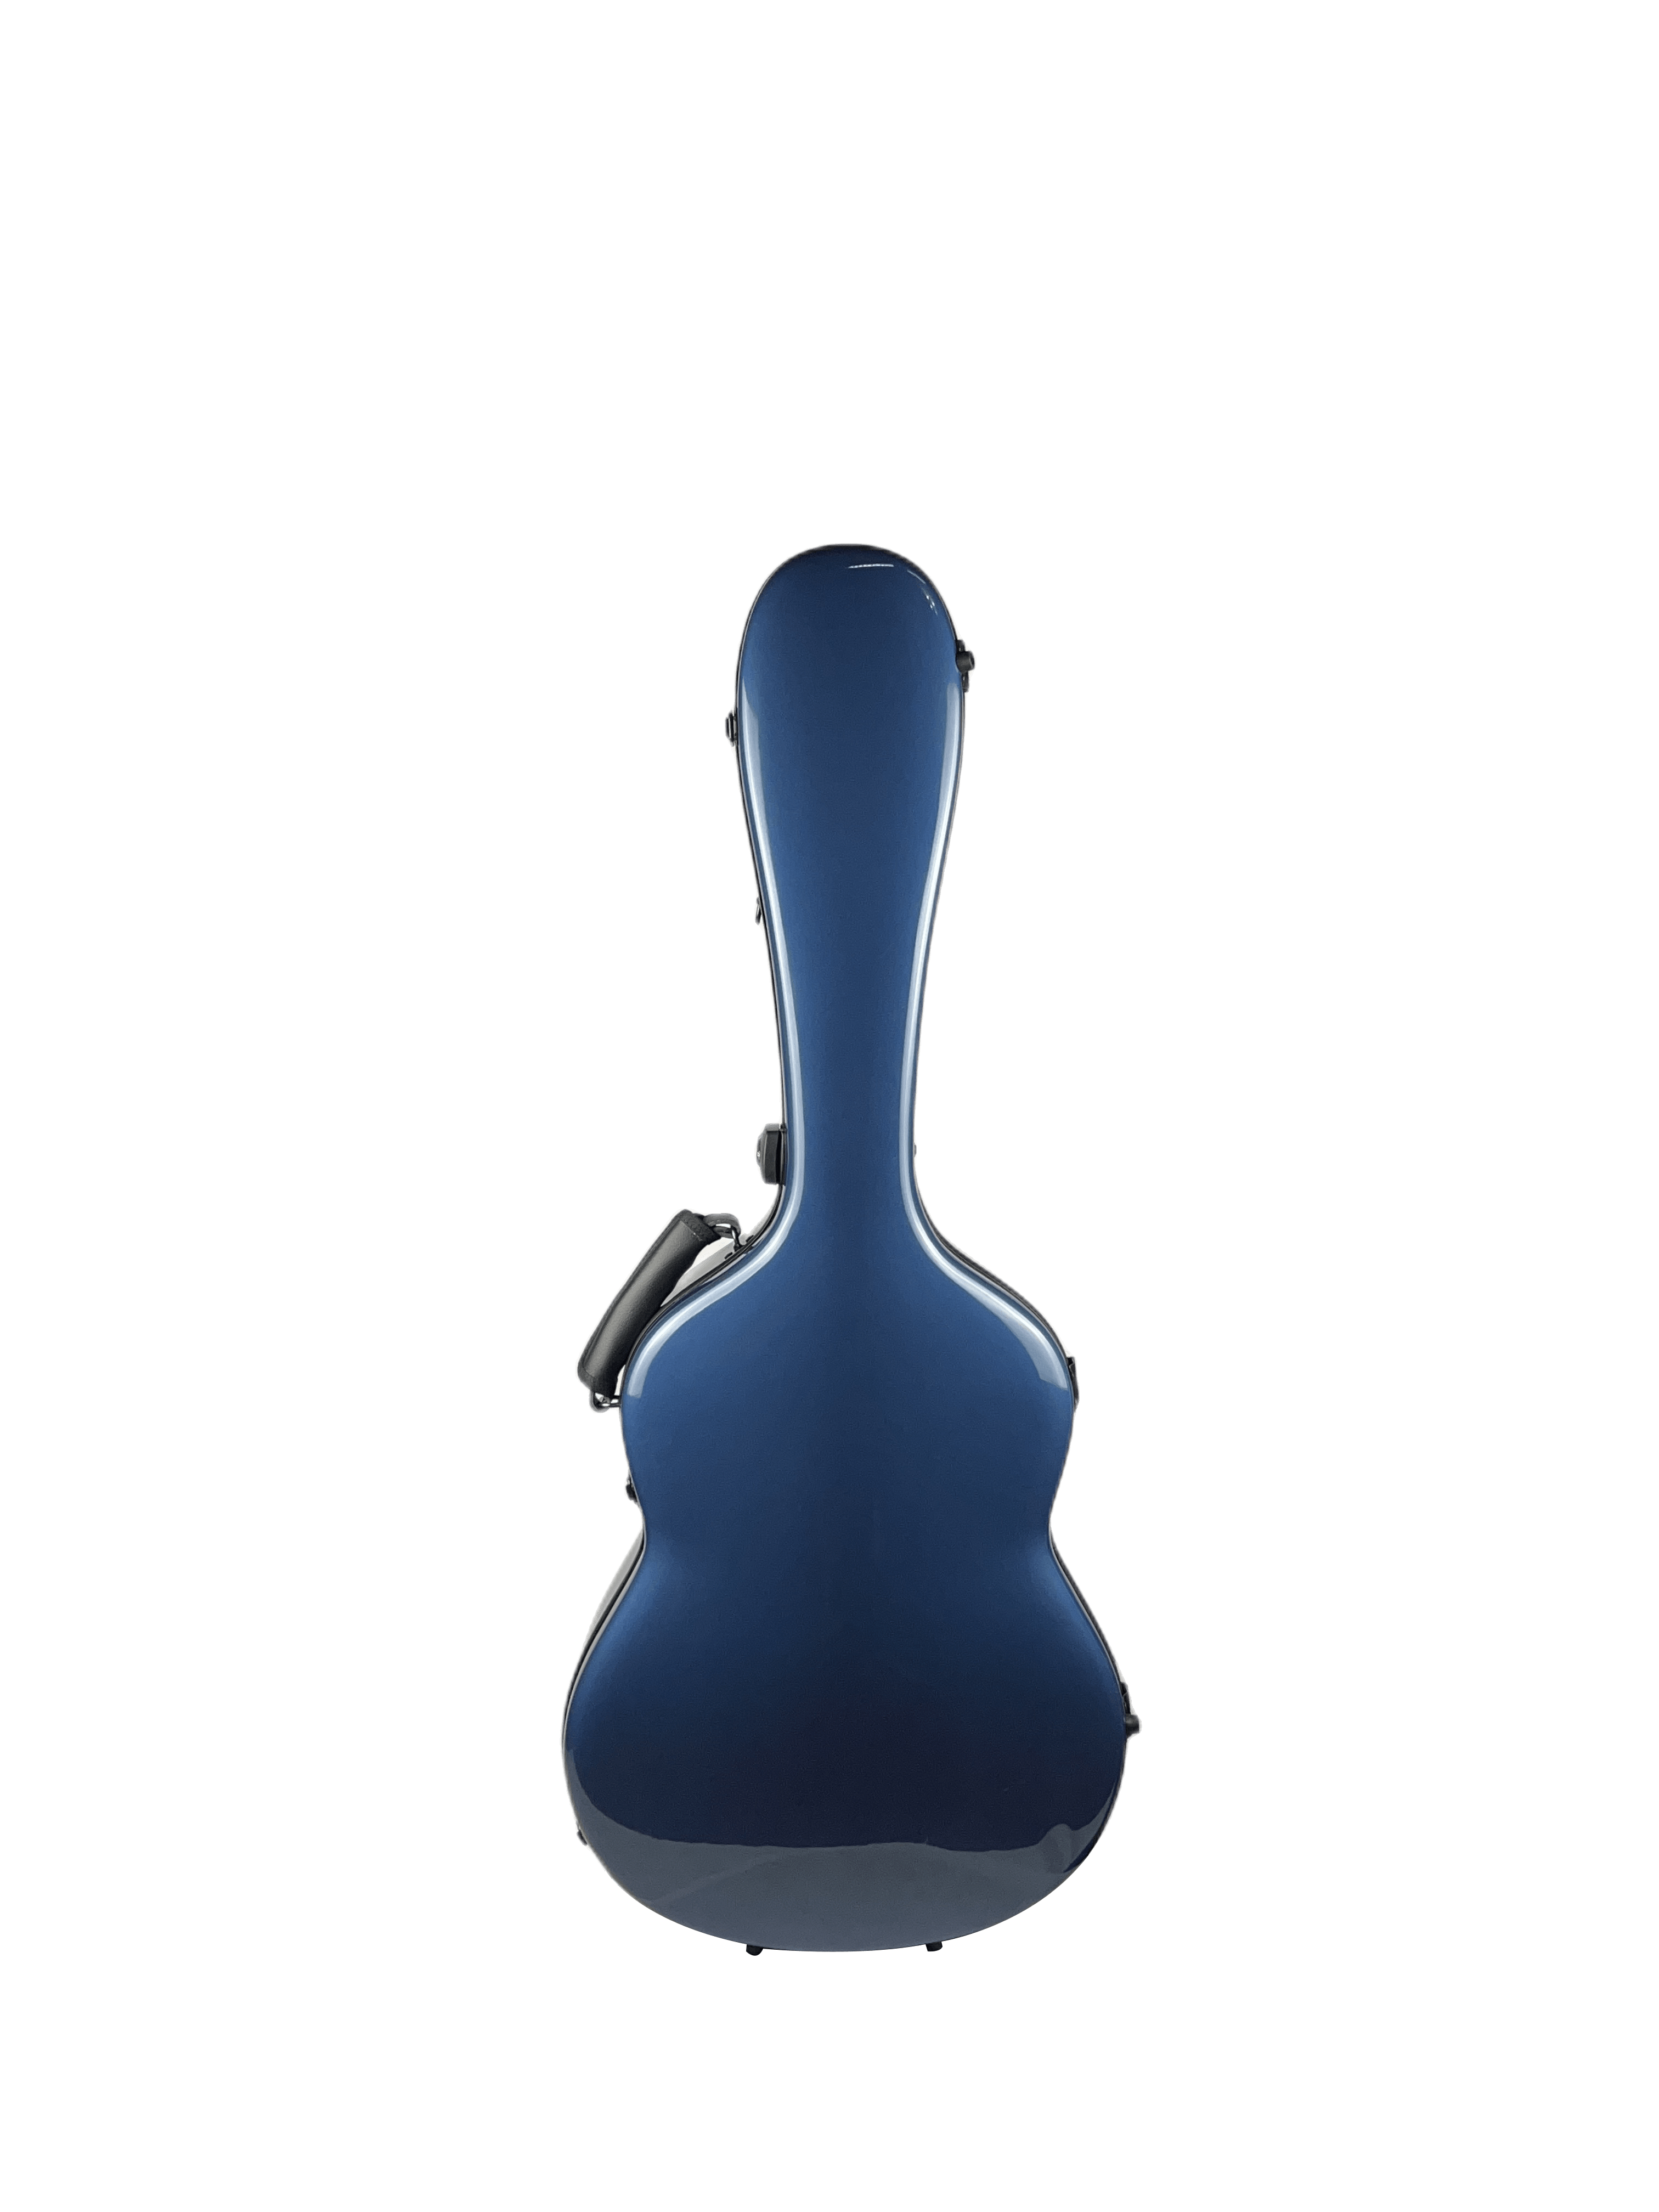 Carbon Alba Guitar Case Blue Gloss for Classical Guitar Acoustic, Flamenco guitar - mackazie